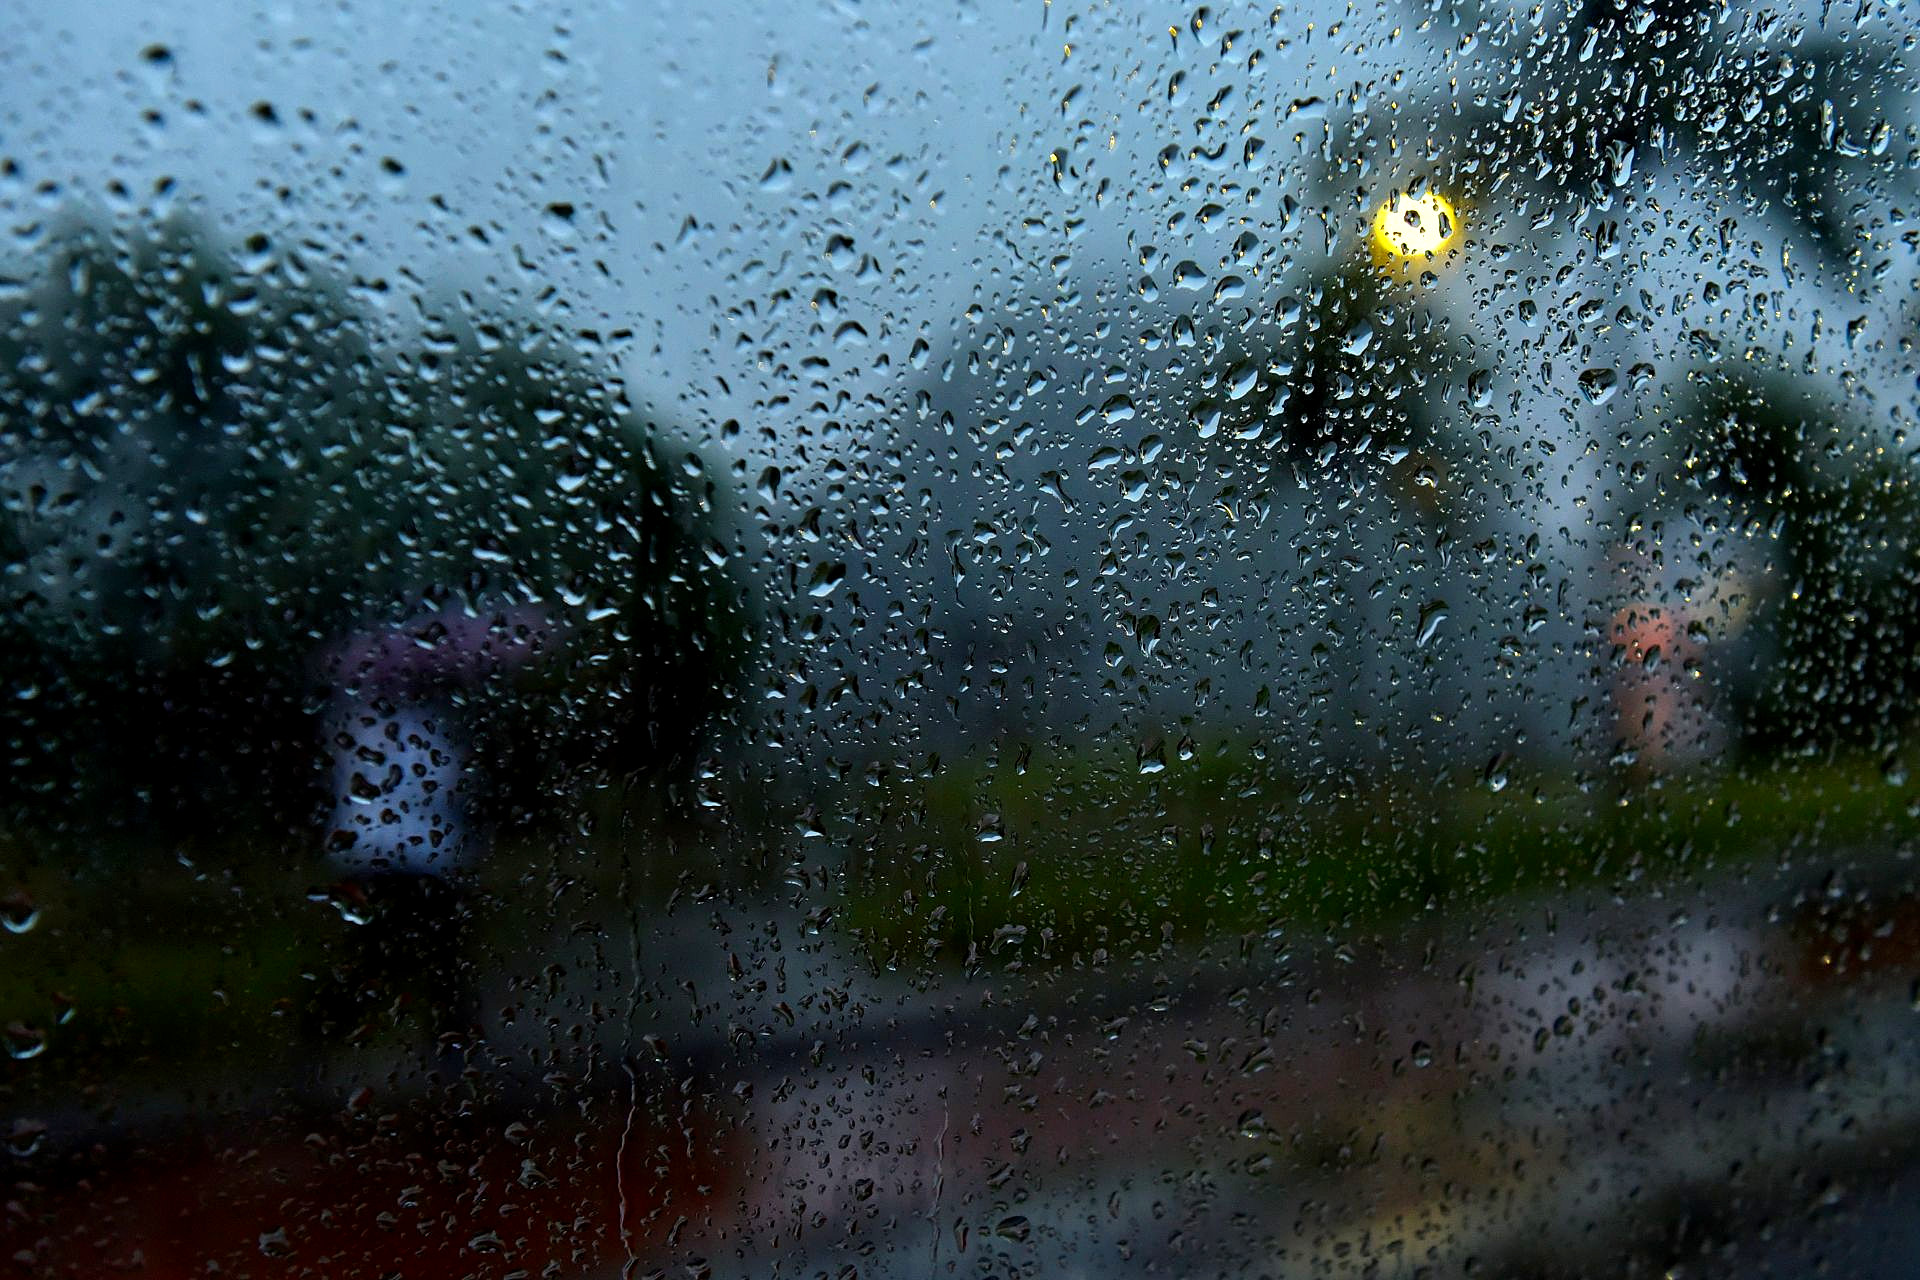 Ensaio fotográfico utilizando como primeiro plano as gotas de água da chuva no vidro do carro - Avenida Beira Mar, em Vitória, ES